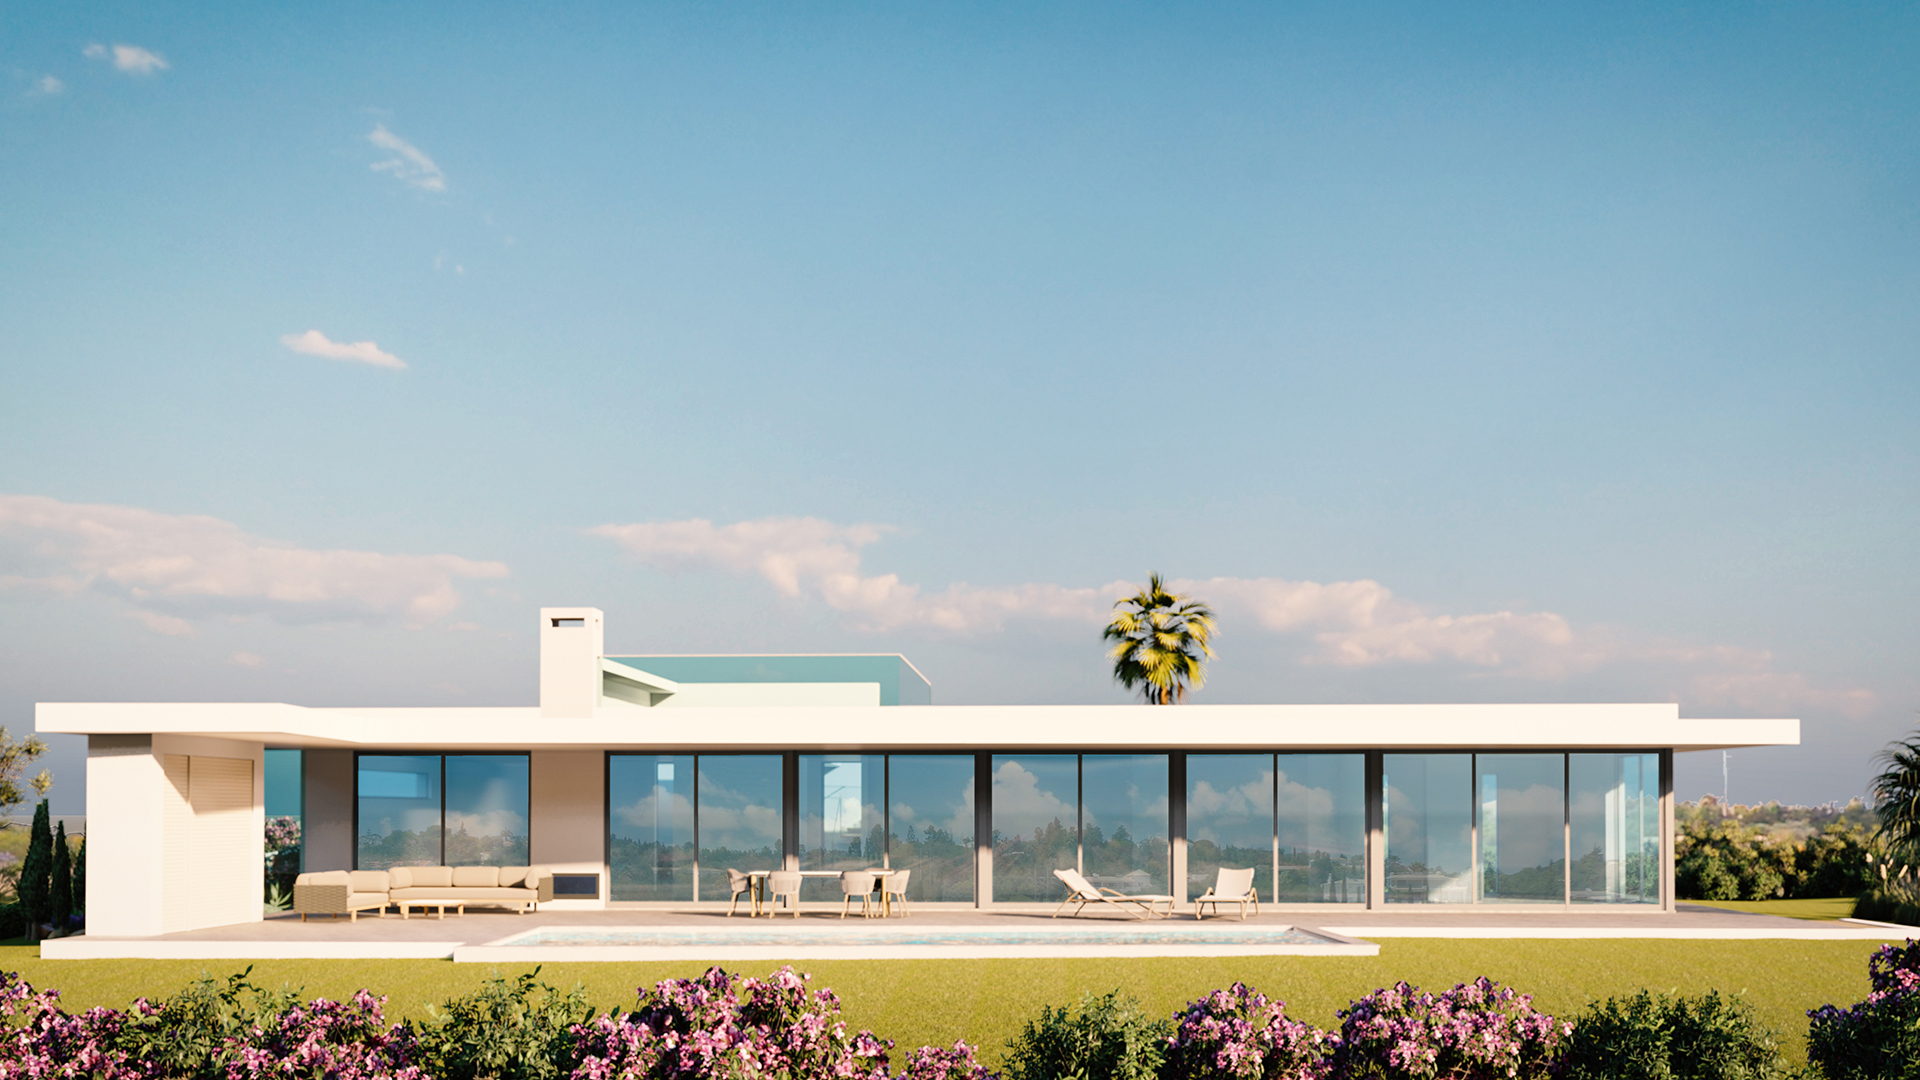 Moderne 3 SZ Villa mit Pool und Meerblick im Bau, in der Nähe von Lagos, West Algarve | LG974 Eine neue moderne Villa mit 3 Schlafzimmern, grossem Pool und Garage auf einem Grundstück von 3015 m². Es ist eines von 7 Projekten (Grundstück und Bau) in einer sehr beliebten Wohngegend in der Nähe von Lagos. Sie befindet sich in einer erstklassigen Lage mit Meer- und Panoramablick und nur 2 Minuten vom Golfplatz Palmares und dem Meia Praia Strand entfernt.